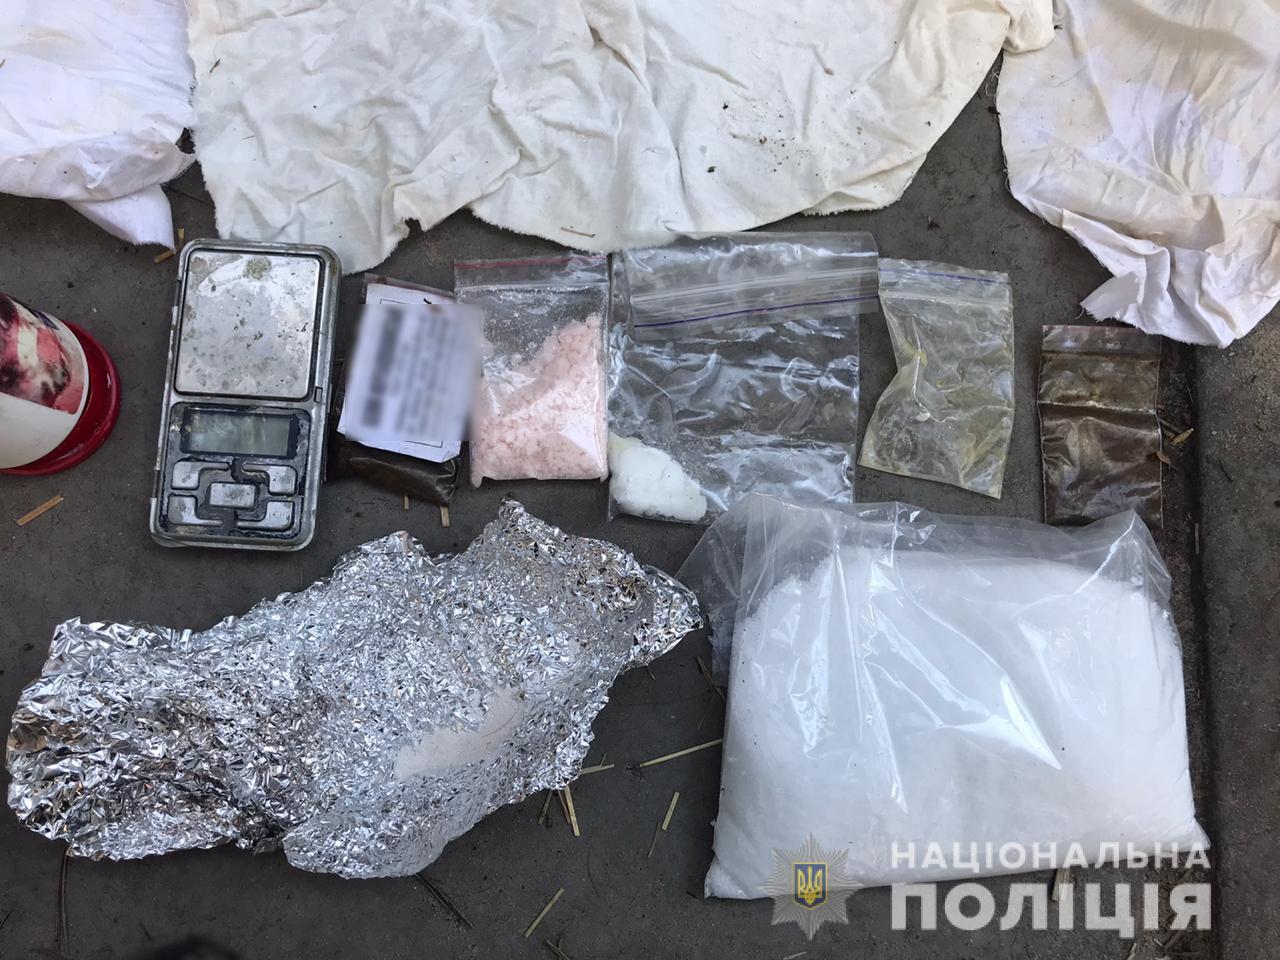 На Киевщине полиция выявила лабораторию по изготовлению психотропного вещества (фото)